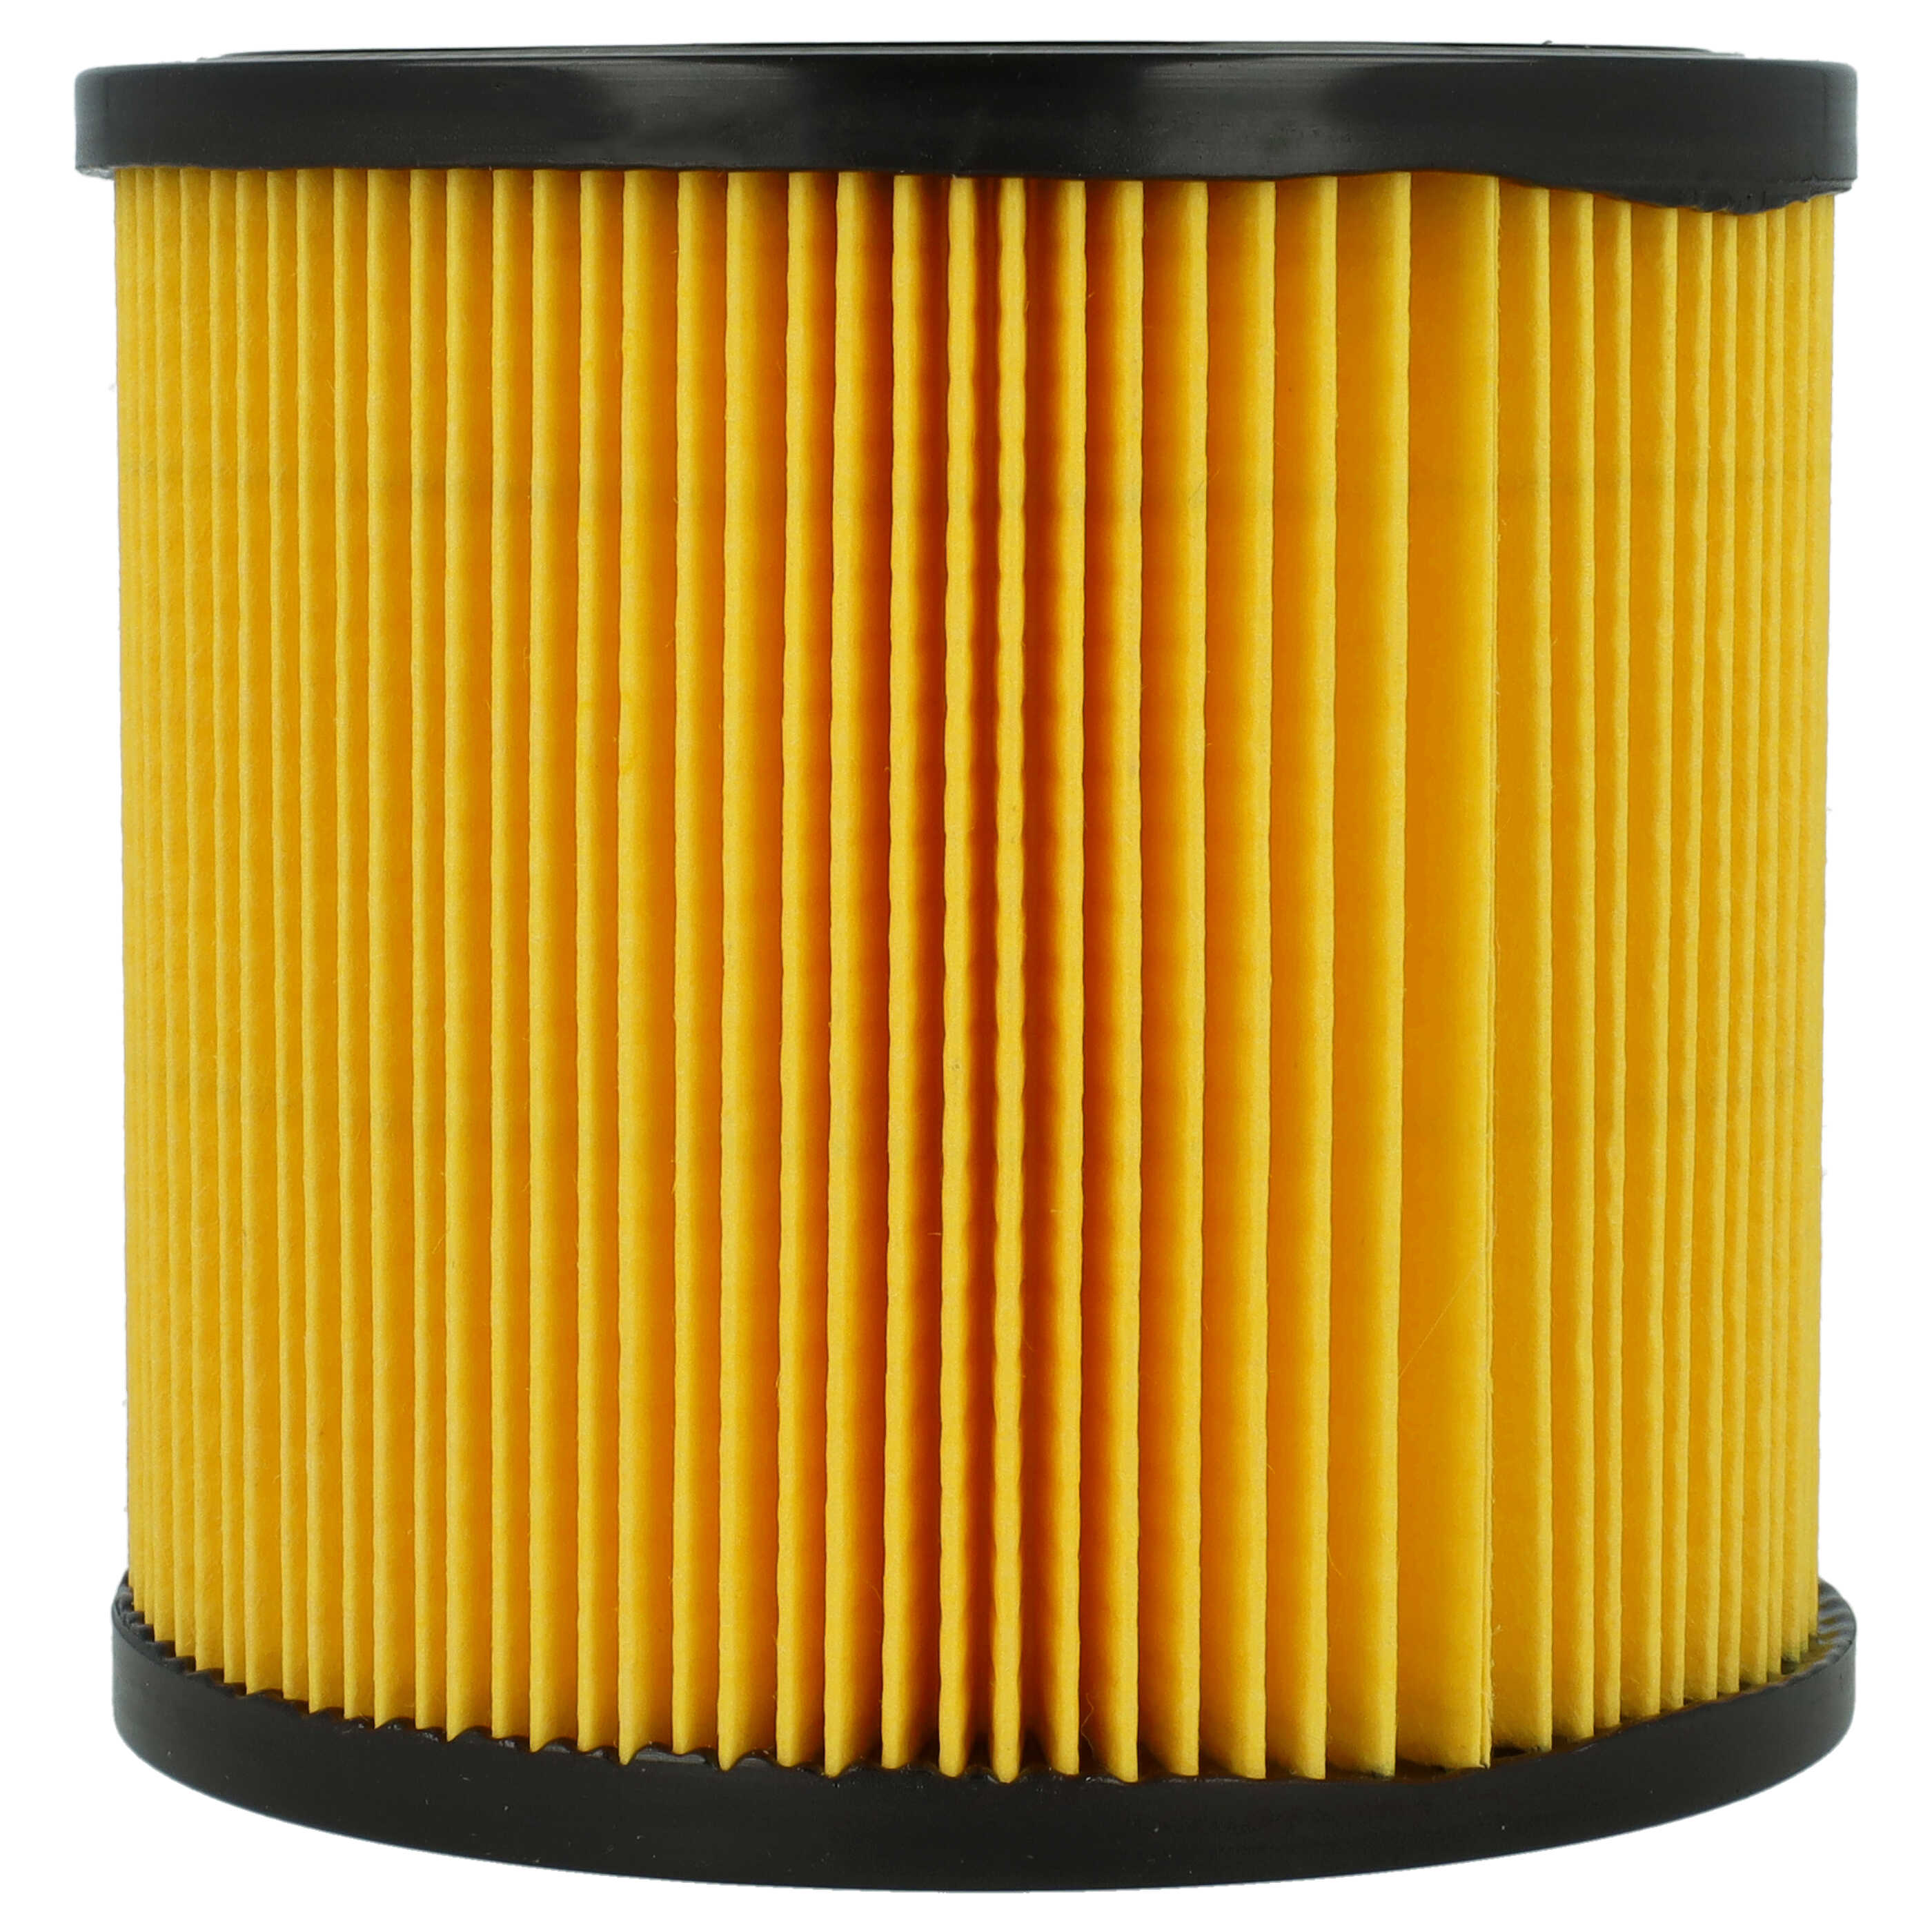 Filtro sostituisce Topcraft K707F, R 693, K704F per aspirapolvere - filtro cartucce, arancione